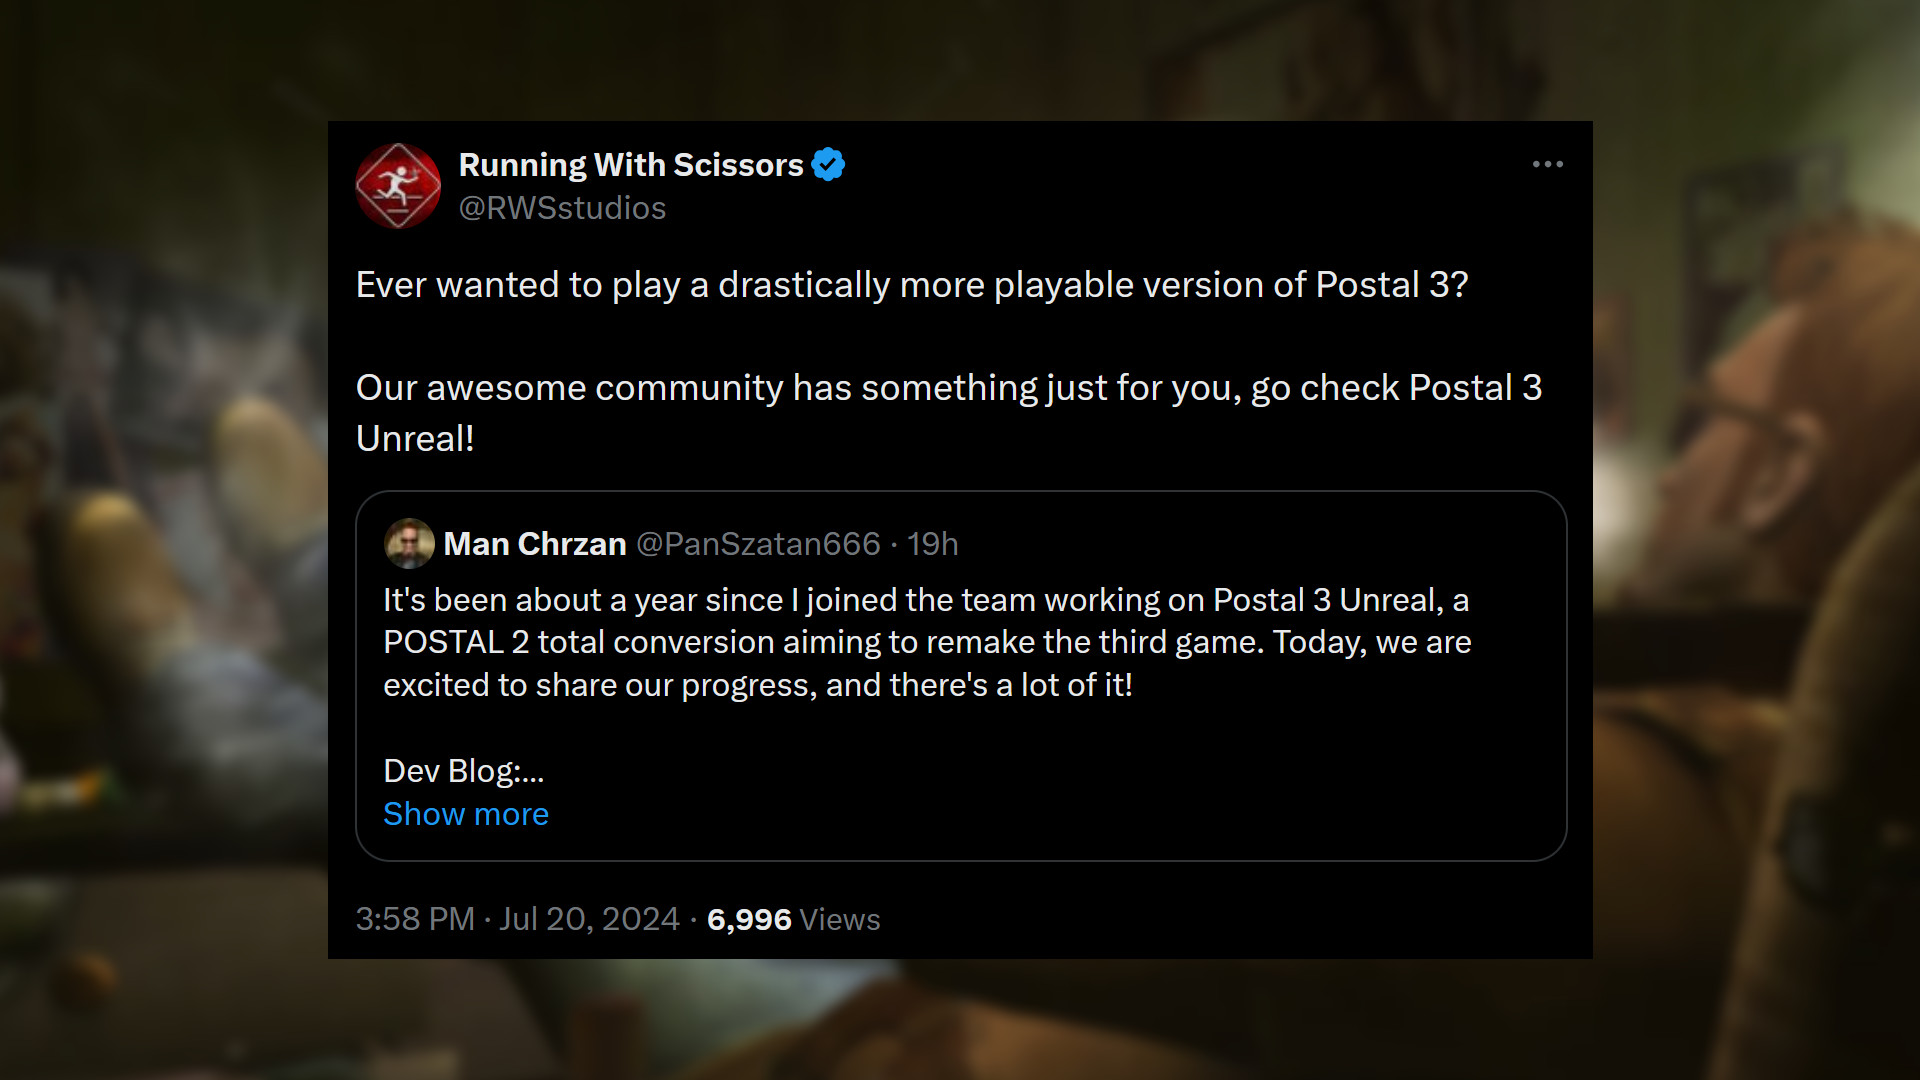 Makasla Koşmak: "Postal 3'ün çok daha oynanabilir bir versiyonunu oynamak istediniz mi hiç? Muhteşem topluluğumuzda tam size göre bir şeyler var, gidip Postal 3 Unreal'ı deneyin!" - Man Chrzan'dan alıntı mesaj: "Postal 3 Unreal üzerinde çalışan ekibe katılalı yaklaşık bir yıl oldu. Üçüncü oyunu yeniden yapmayı amaçlayan POSTAL 2'nin tam dönüşümü. Bugün, ilerlememizi paylaşmaktan heyecan duyuyoruz ve çok fazla ilerleme var!"